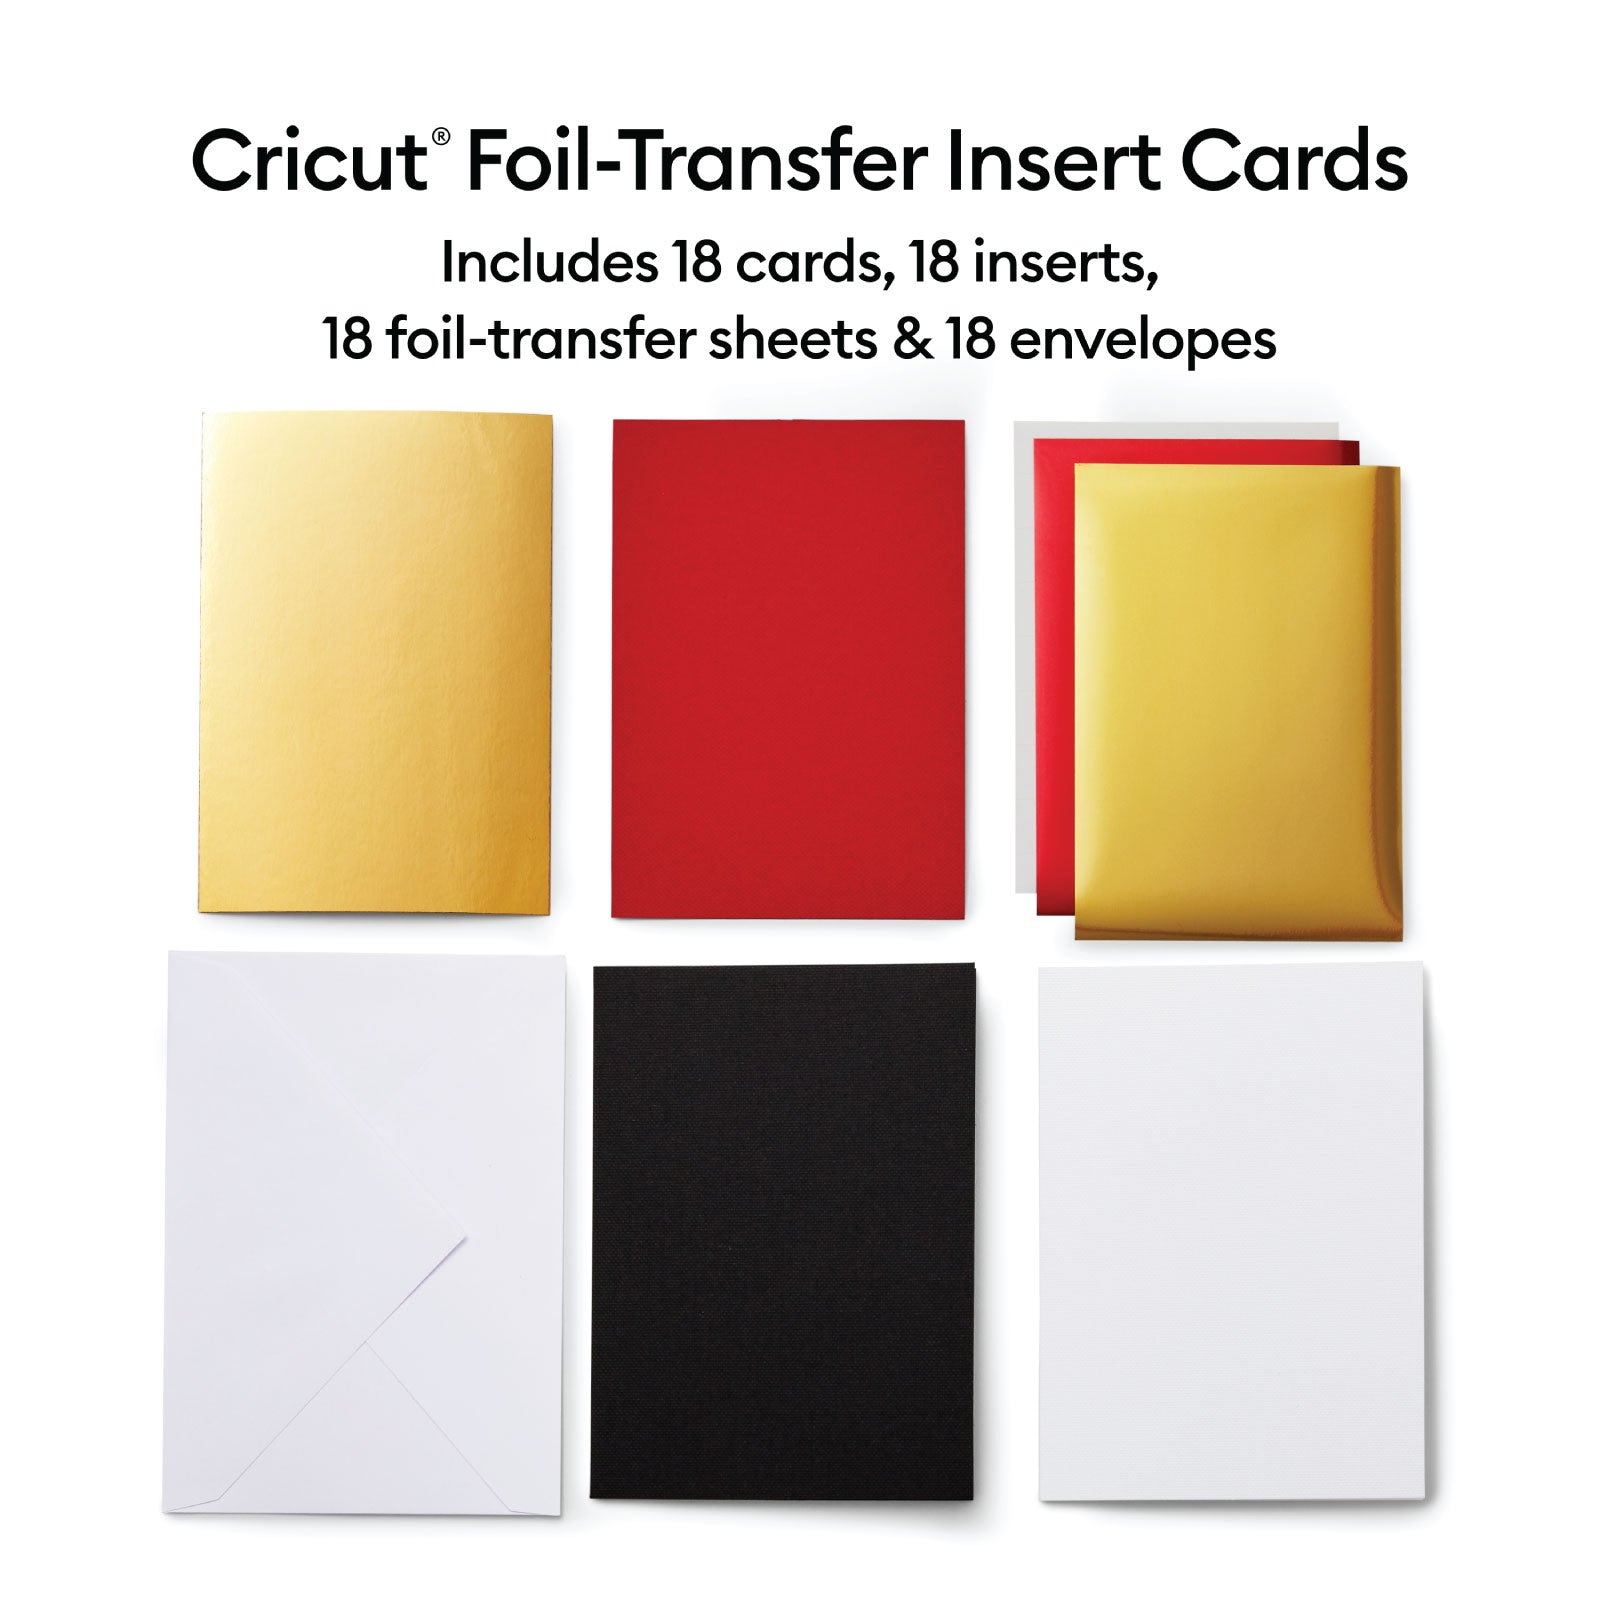 Cricut Foil Transfer Insert Cards, Royal Flush Sampler - R10 18 ct - Damaged Package